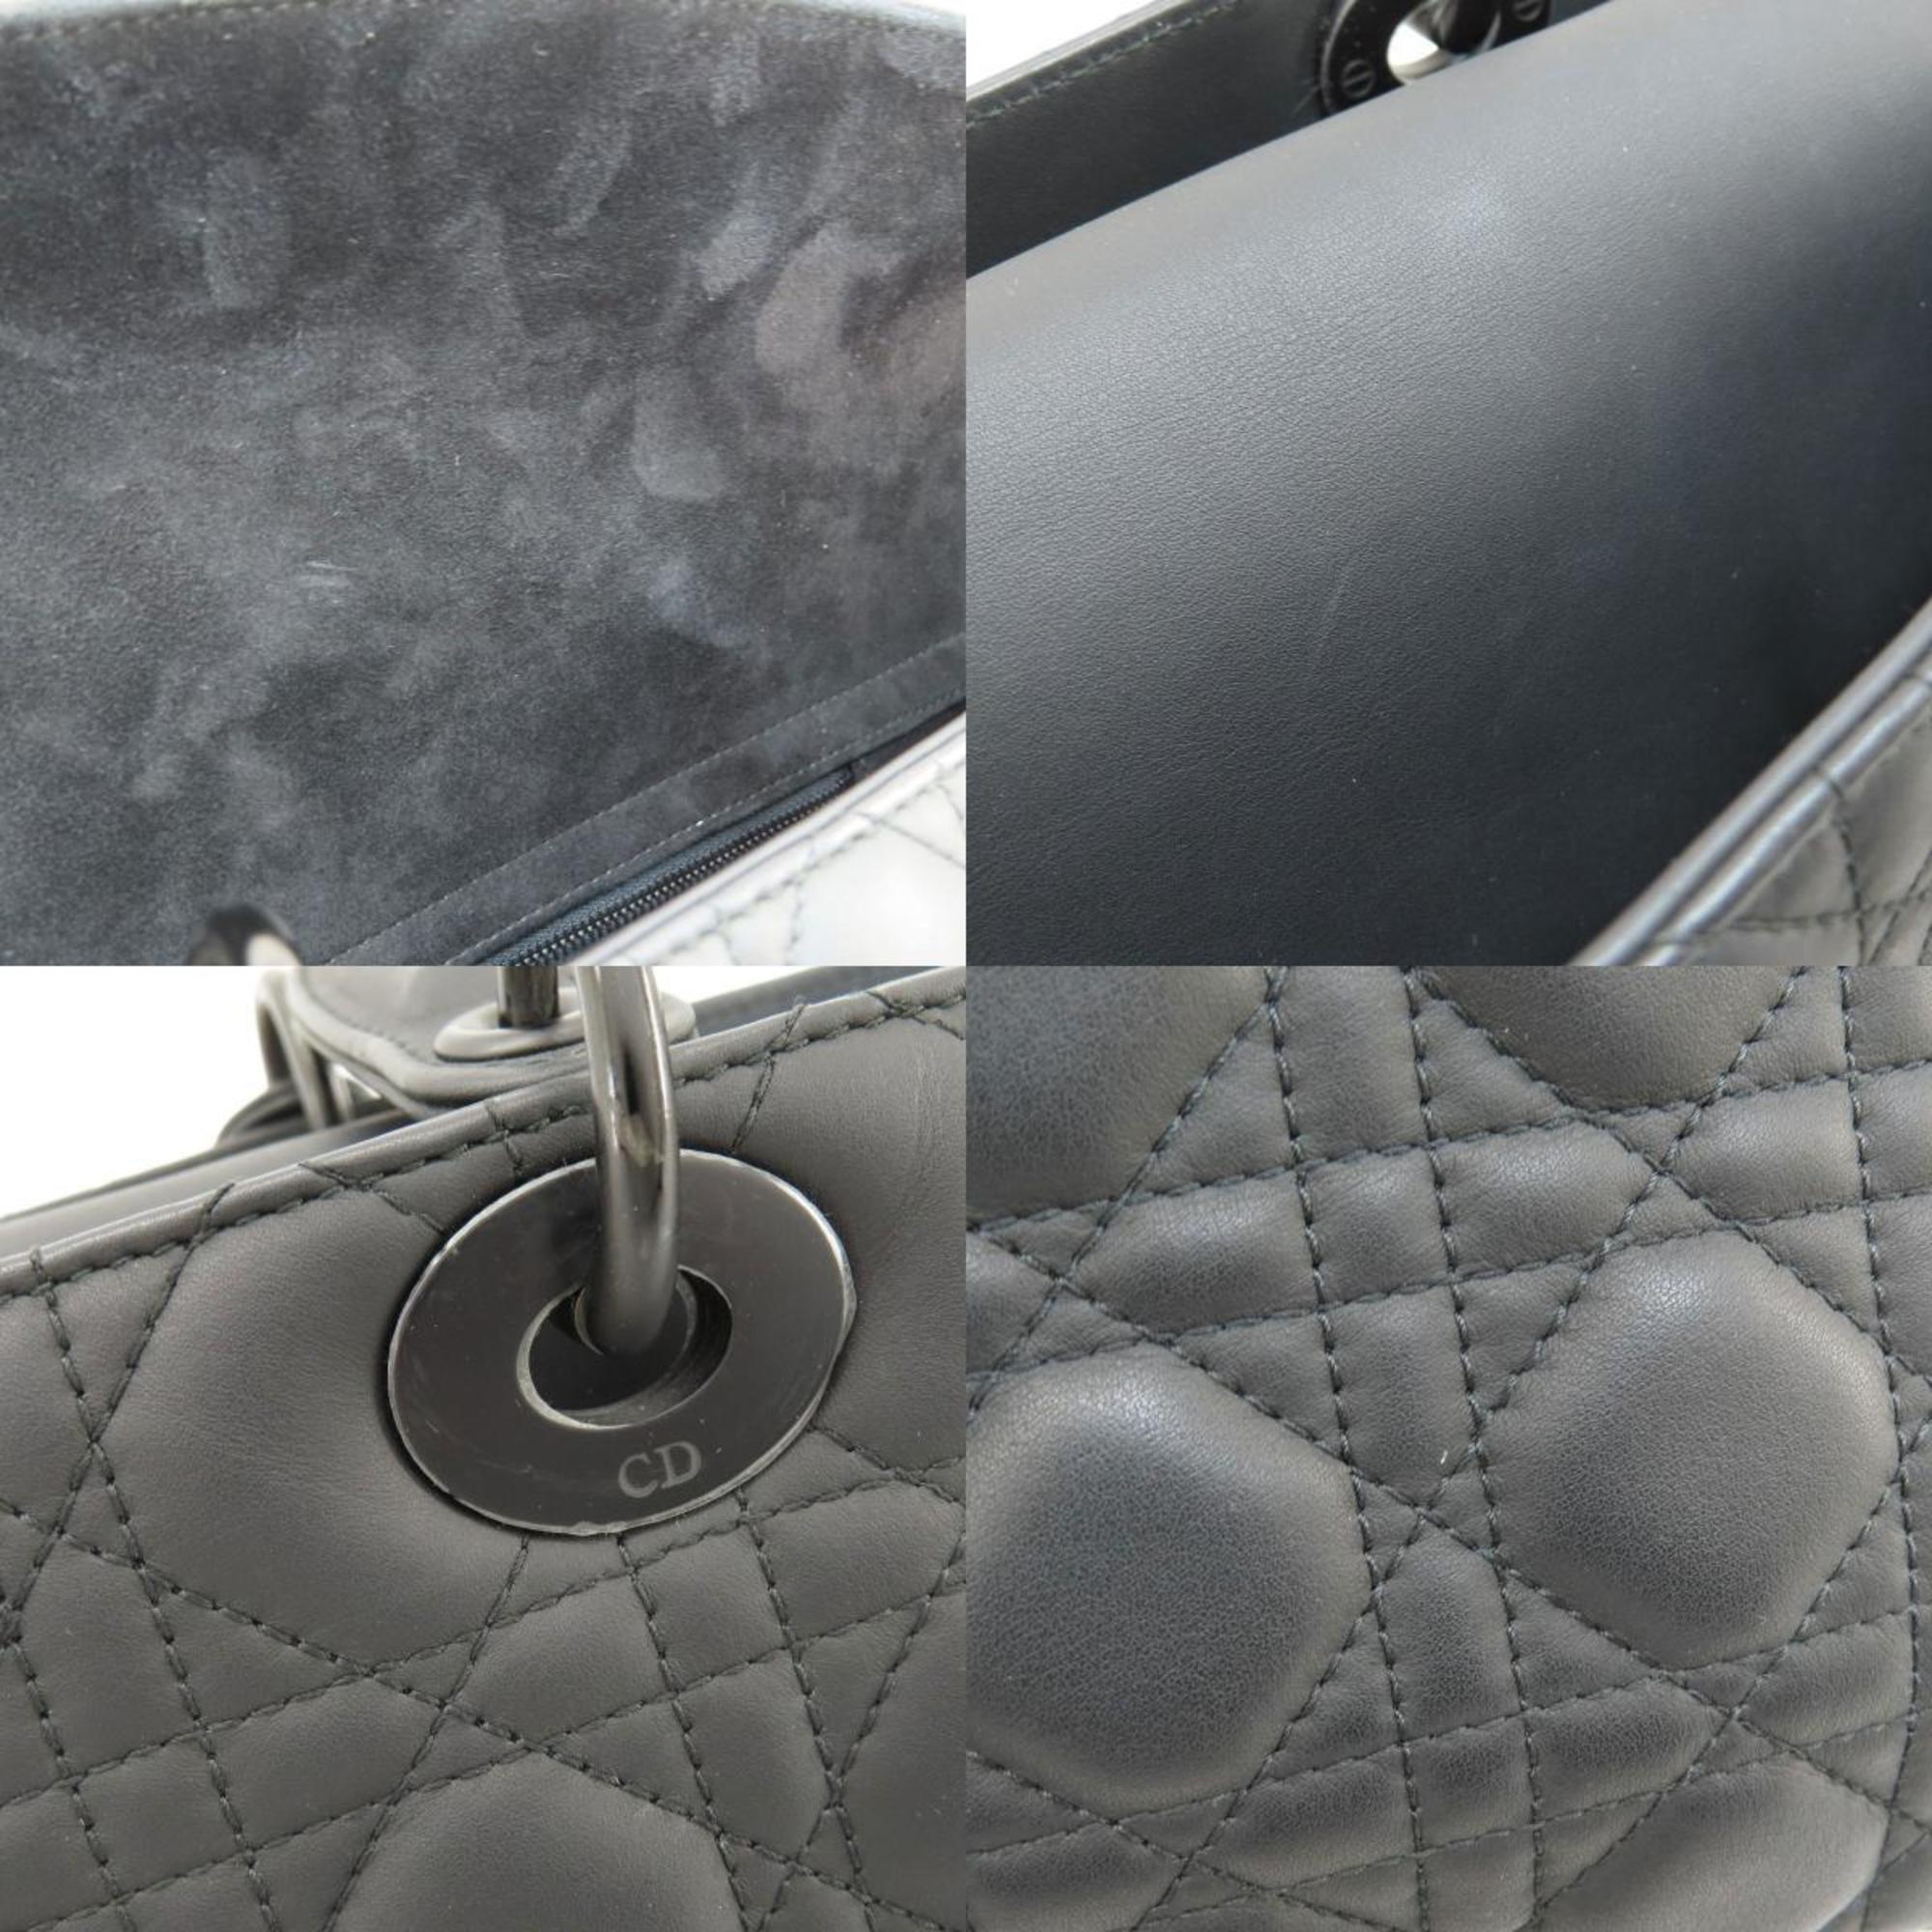 Christian Dior Lady Handbag Calf Ultra Matte Calfskin Women's